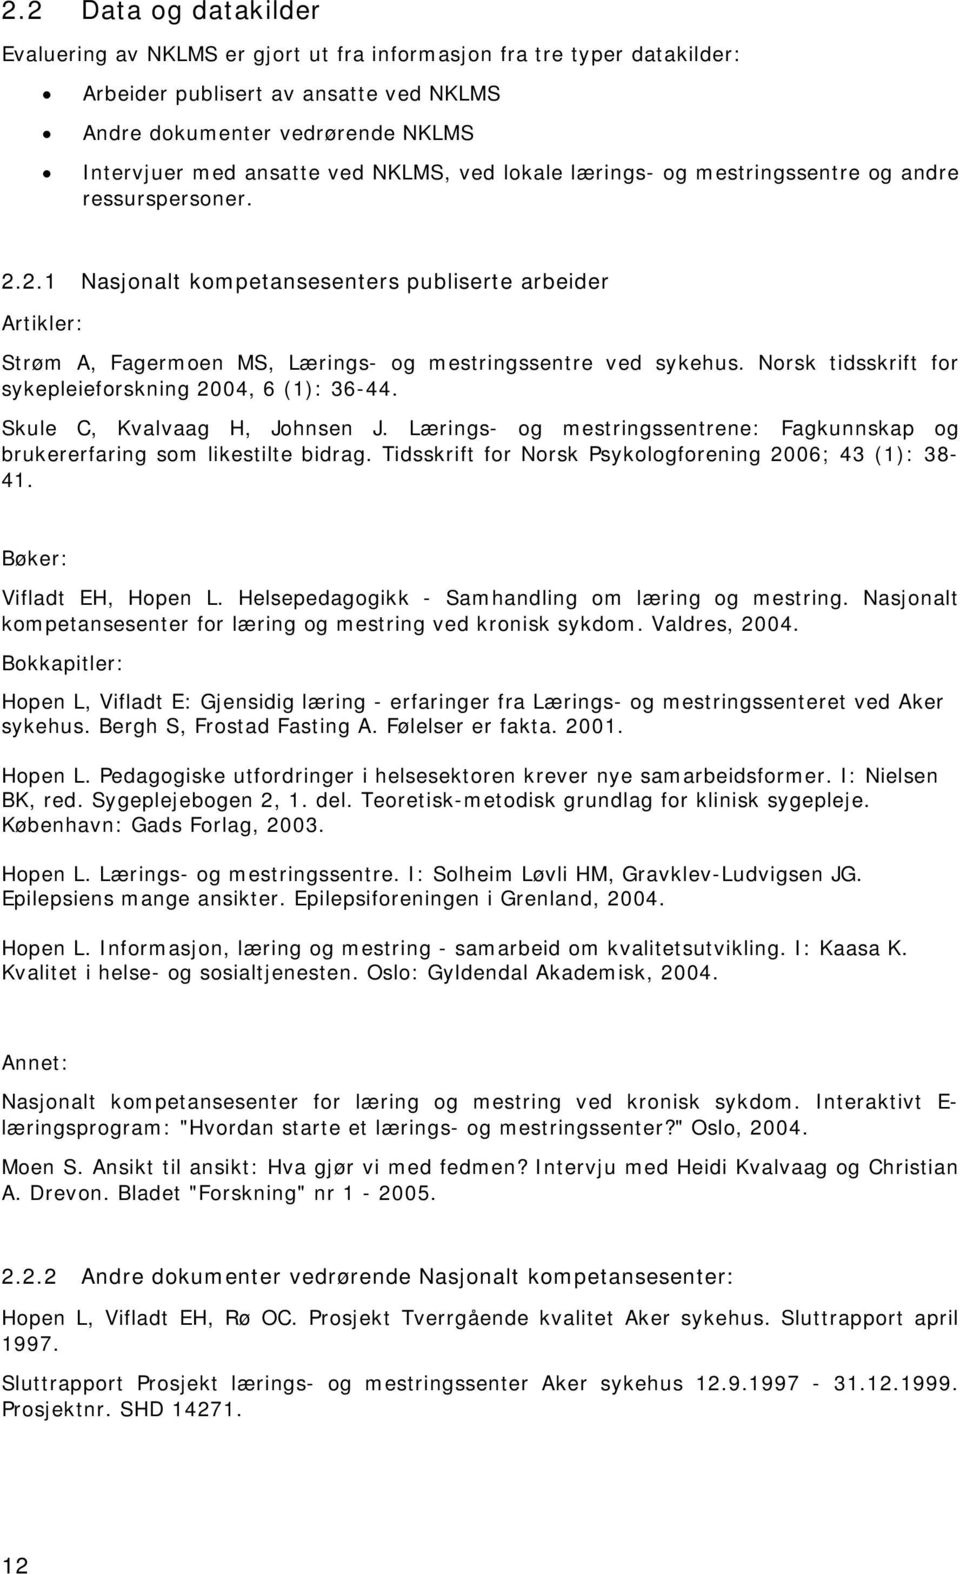 Norsk tidsskrift for sykepleieforskning 2004, 6 (1): 36-44. Skule C, Kvalvaag H, Johnsen J. Lærings- og mestringssentrene: Fagkunnskap og brukererfaring som likestilte bidrag.